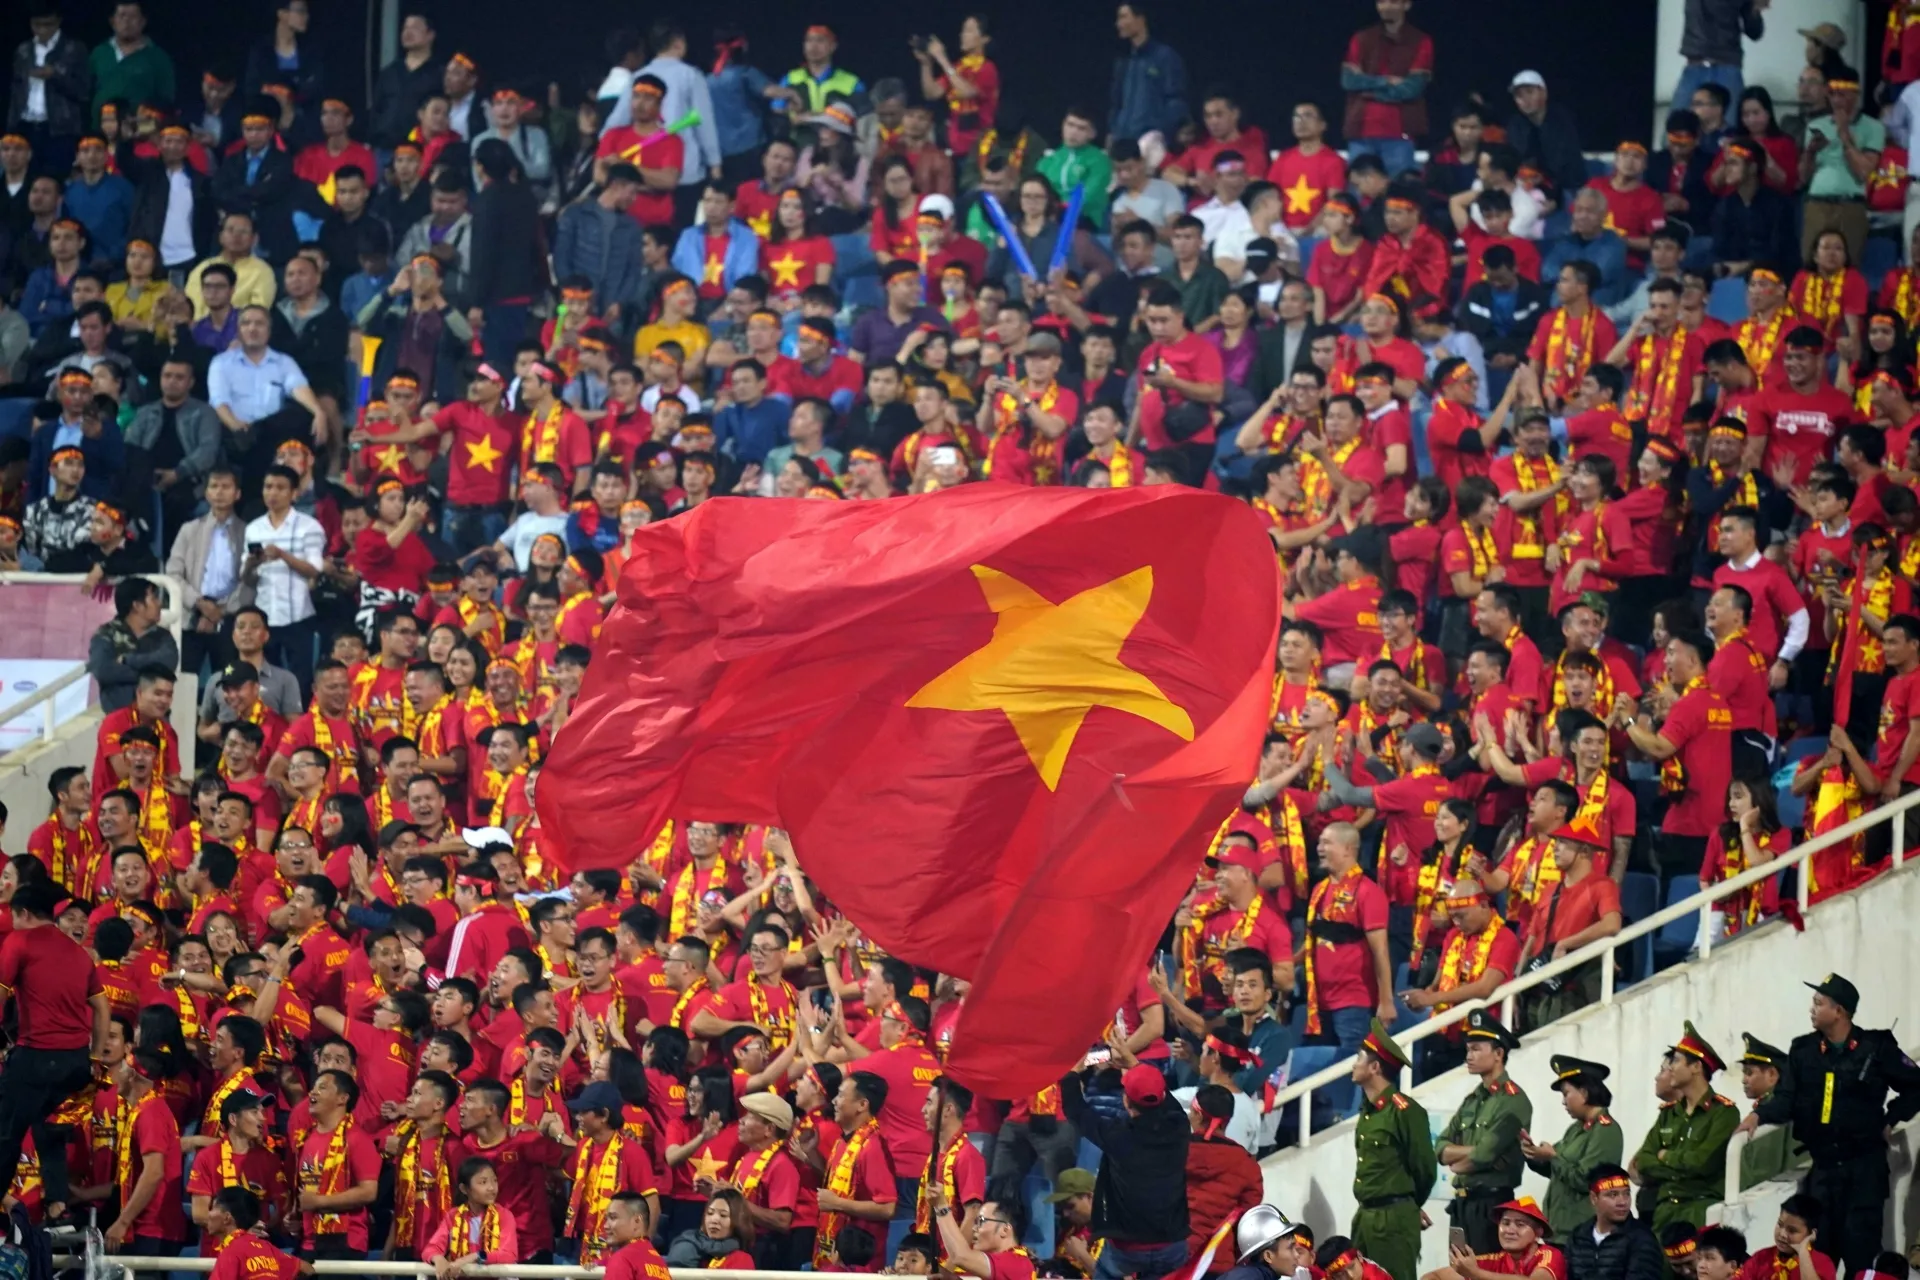 Bóng đá Việt Nam vượt mặt hàng loạt ông lớn châu Á trên BXH đặc biệt